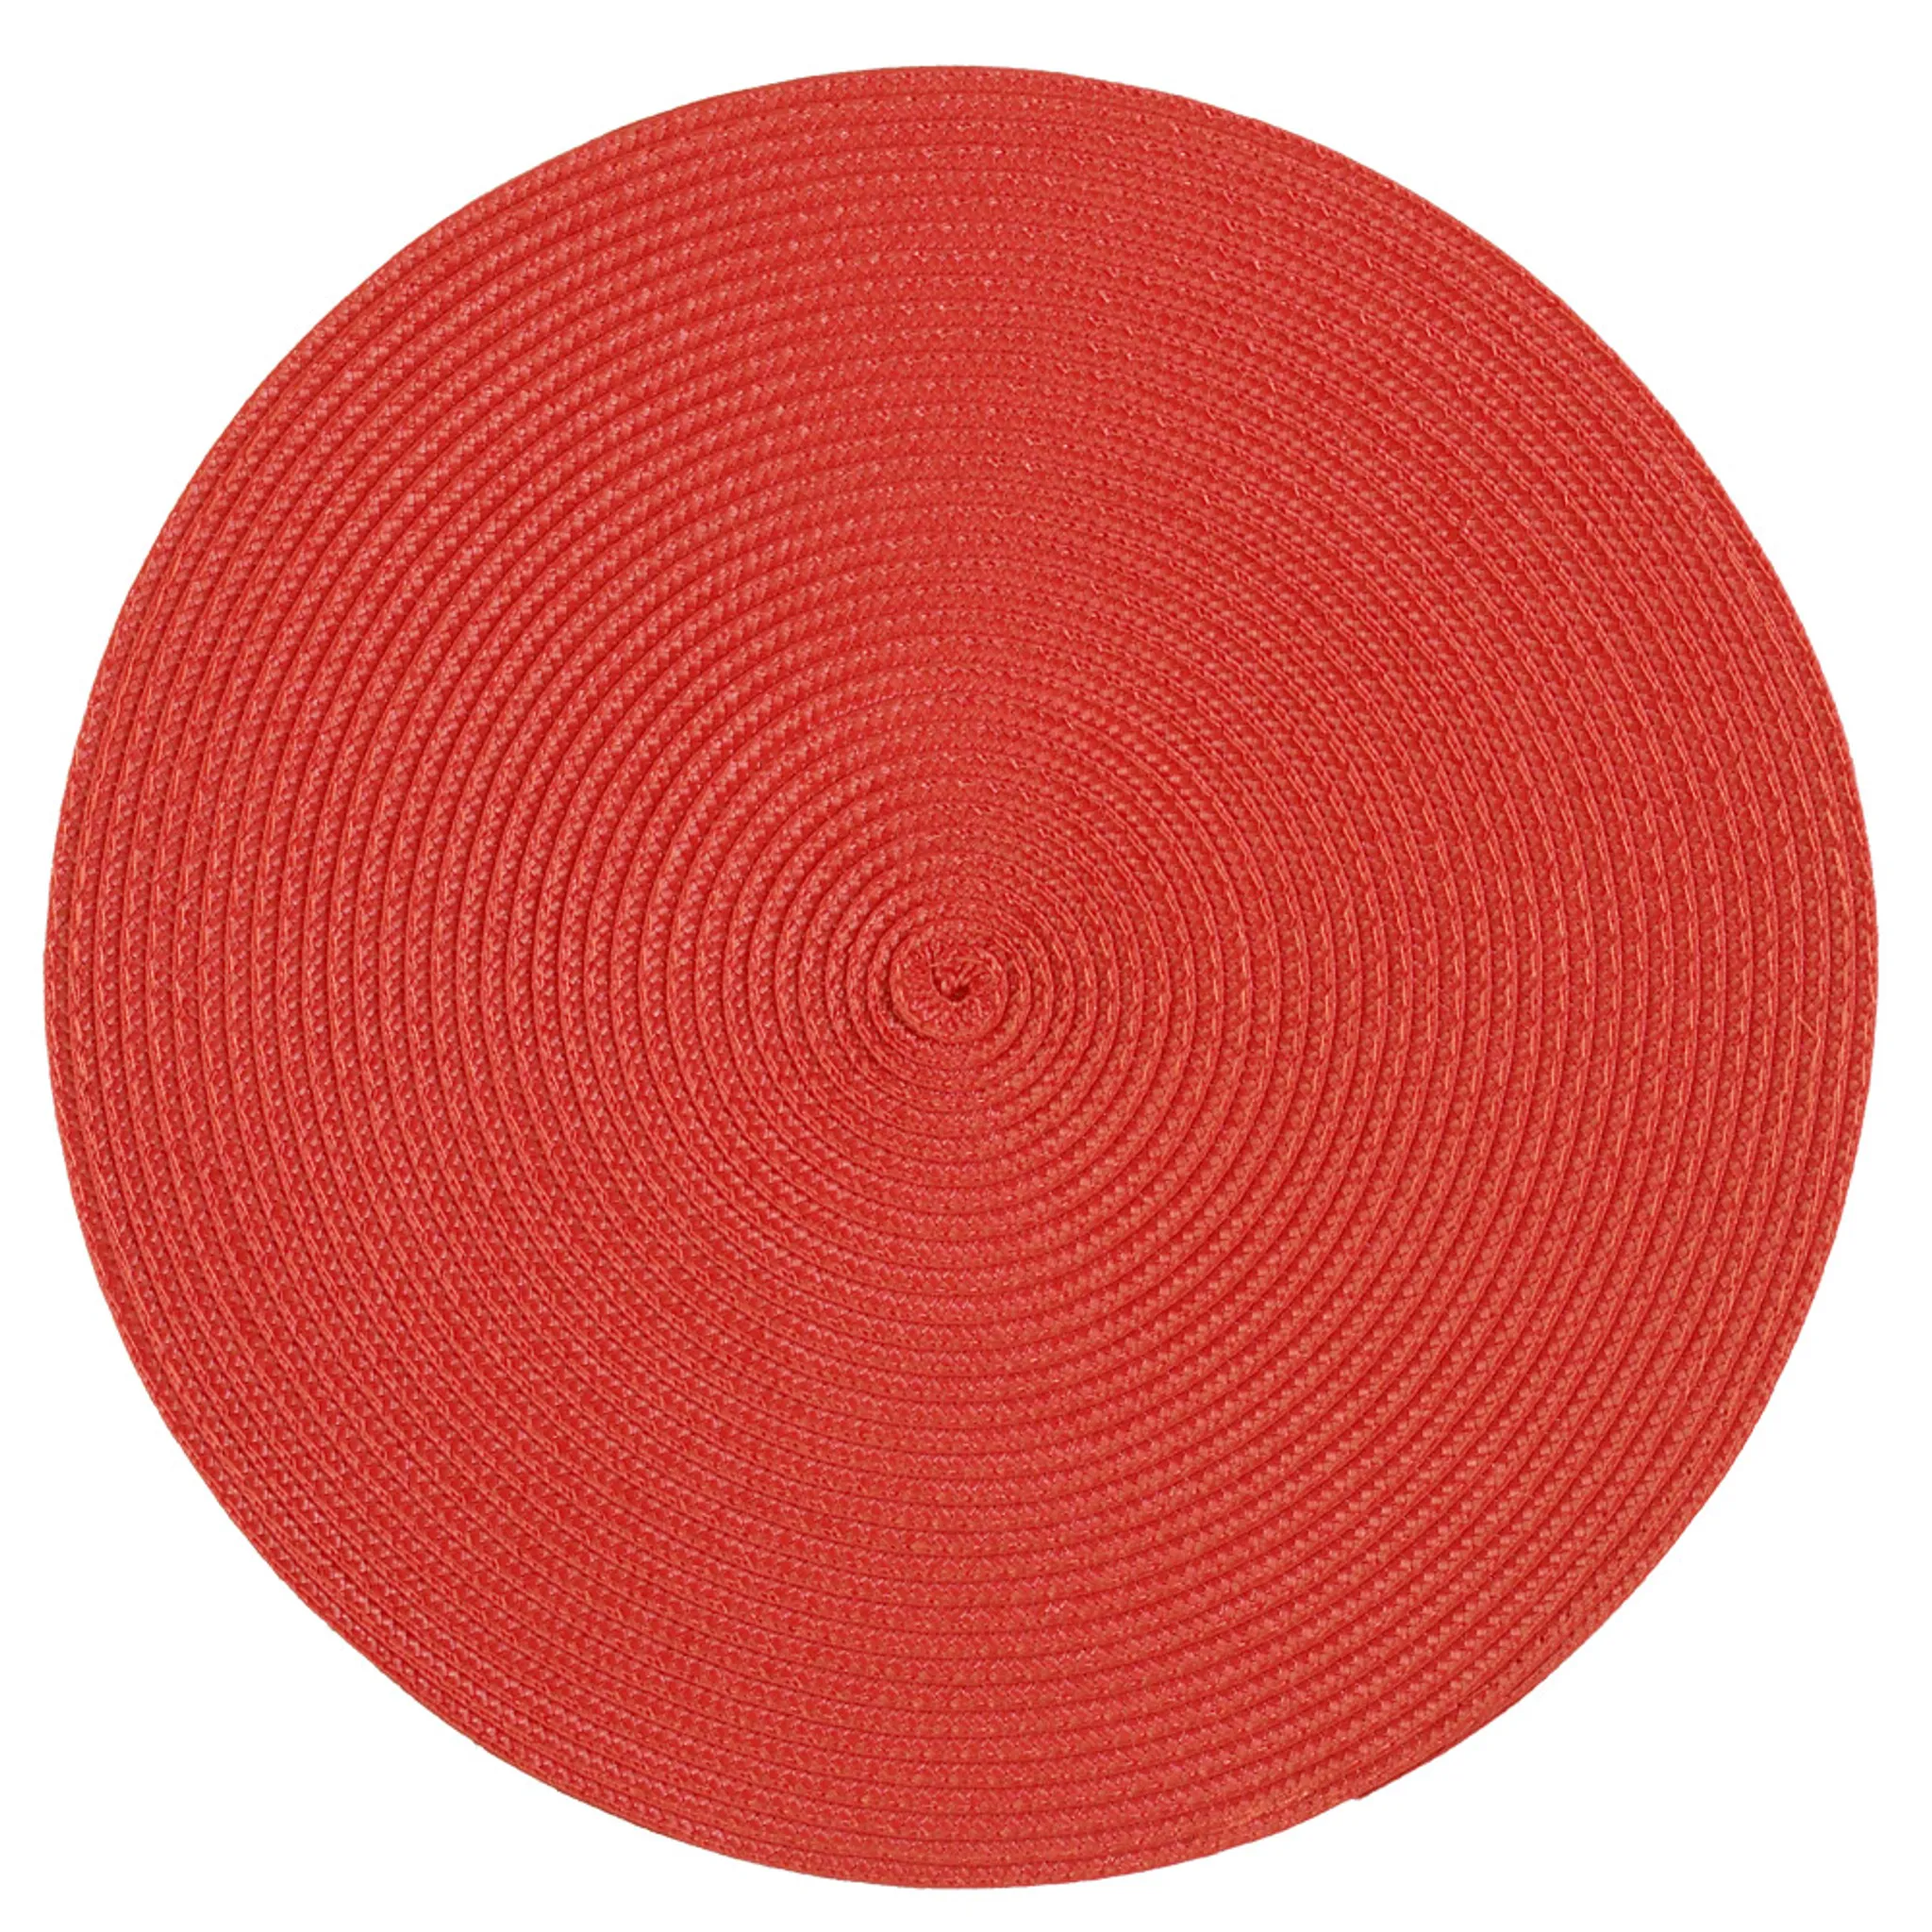 Platzset Polypro Rot rund ca. 35 cm Ø